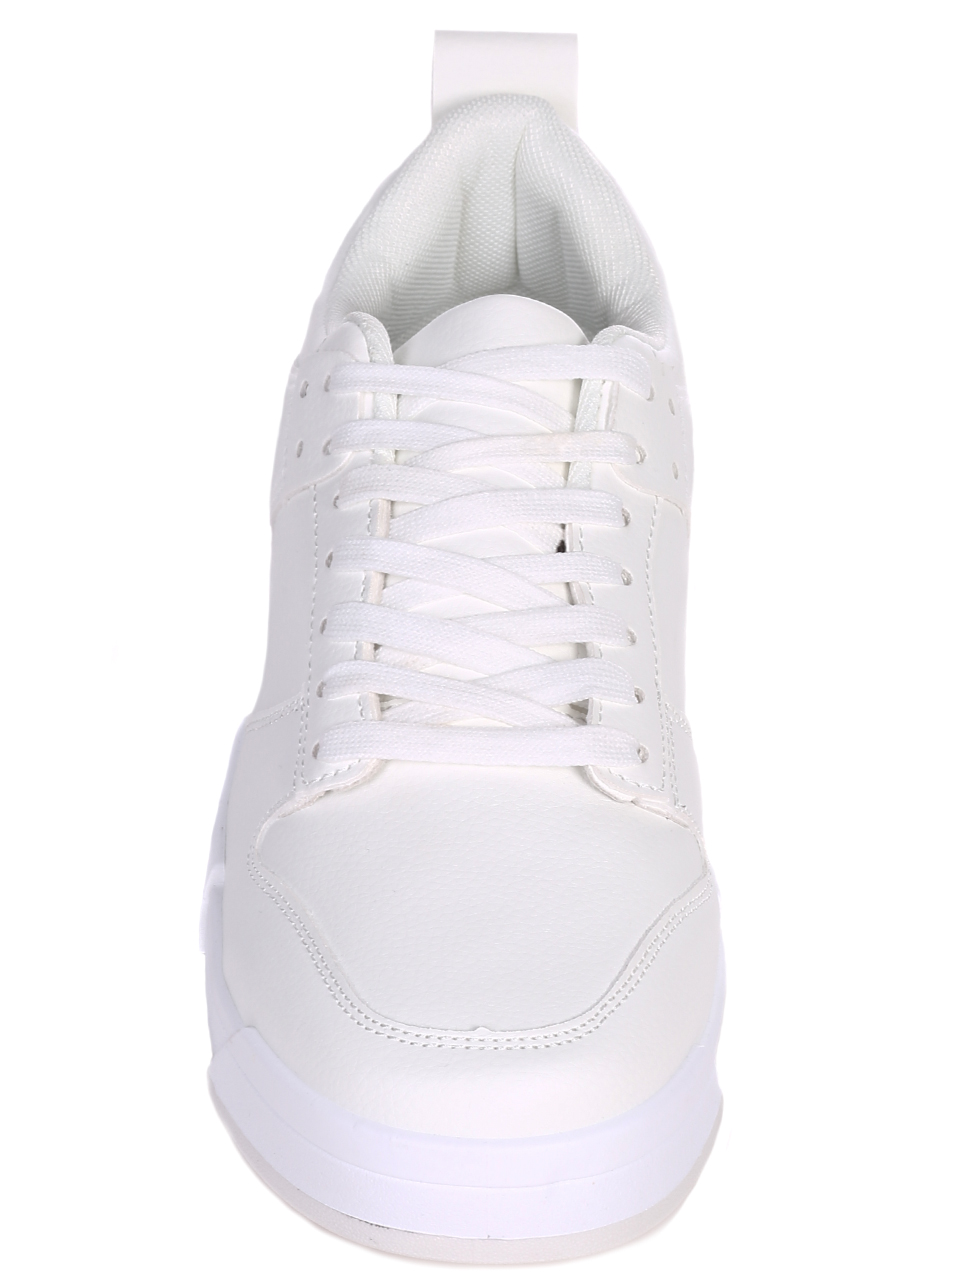 Ежедневни мъжки обувки в бяло 7U-22020 white